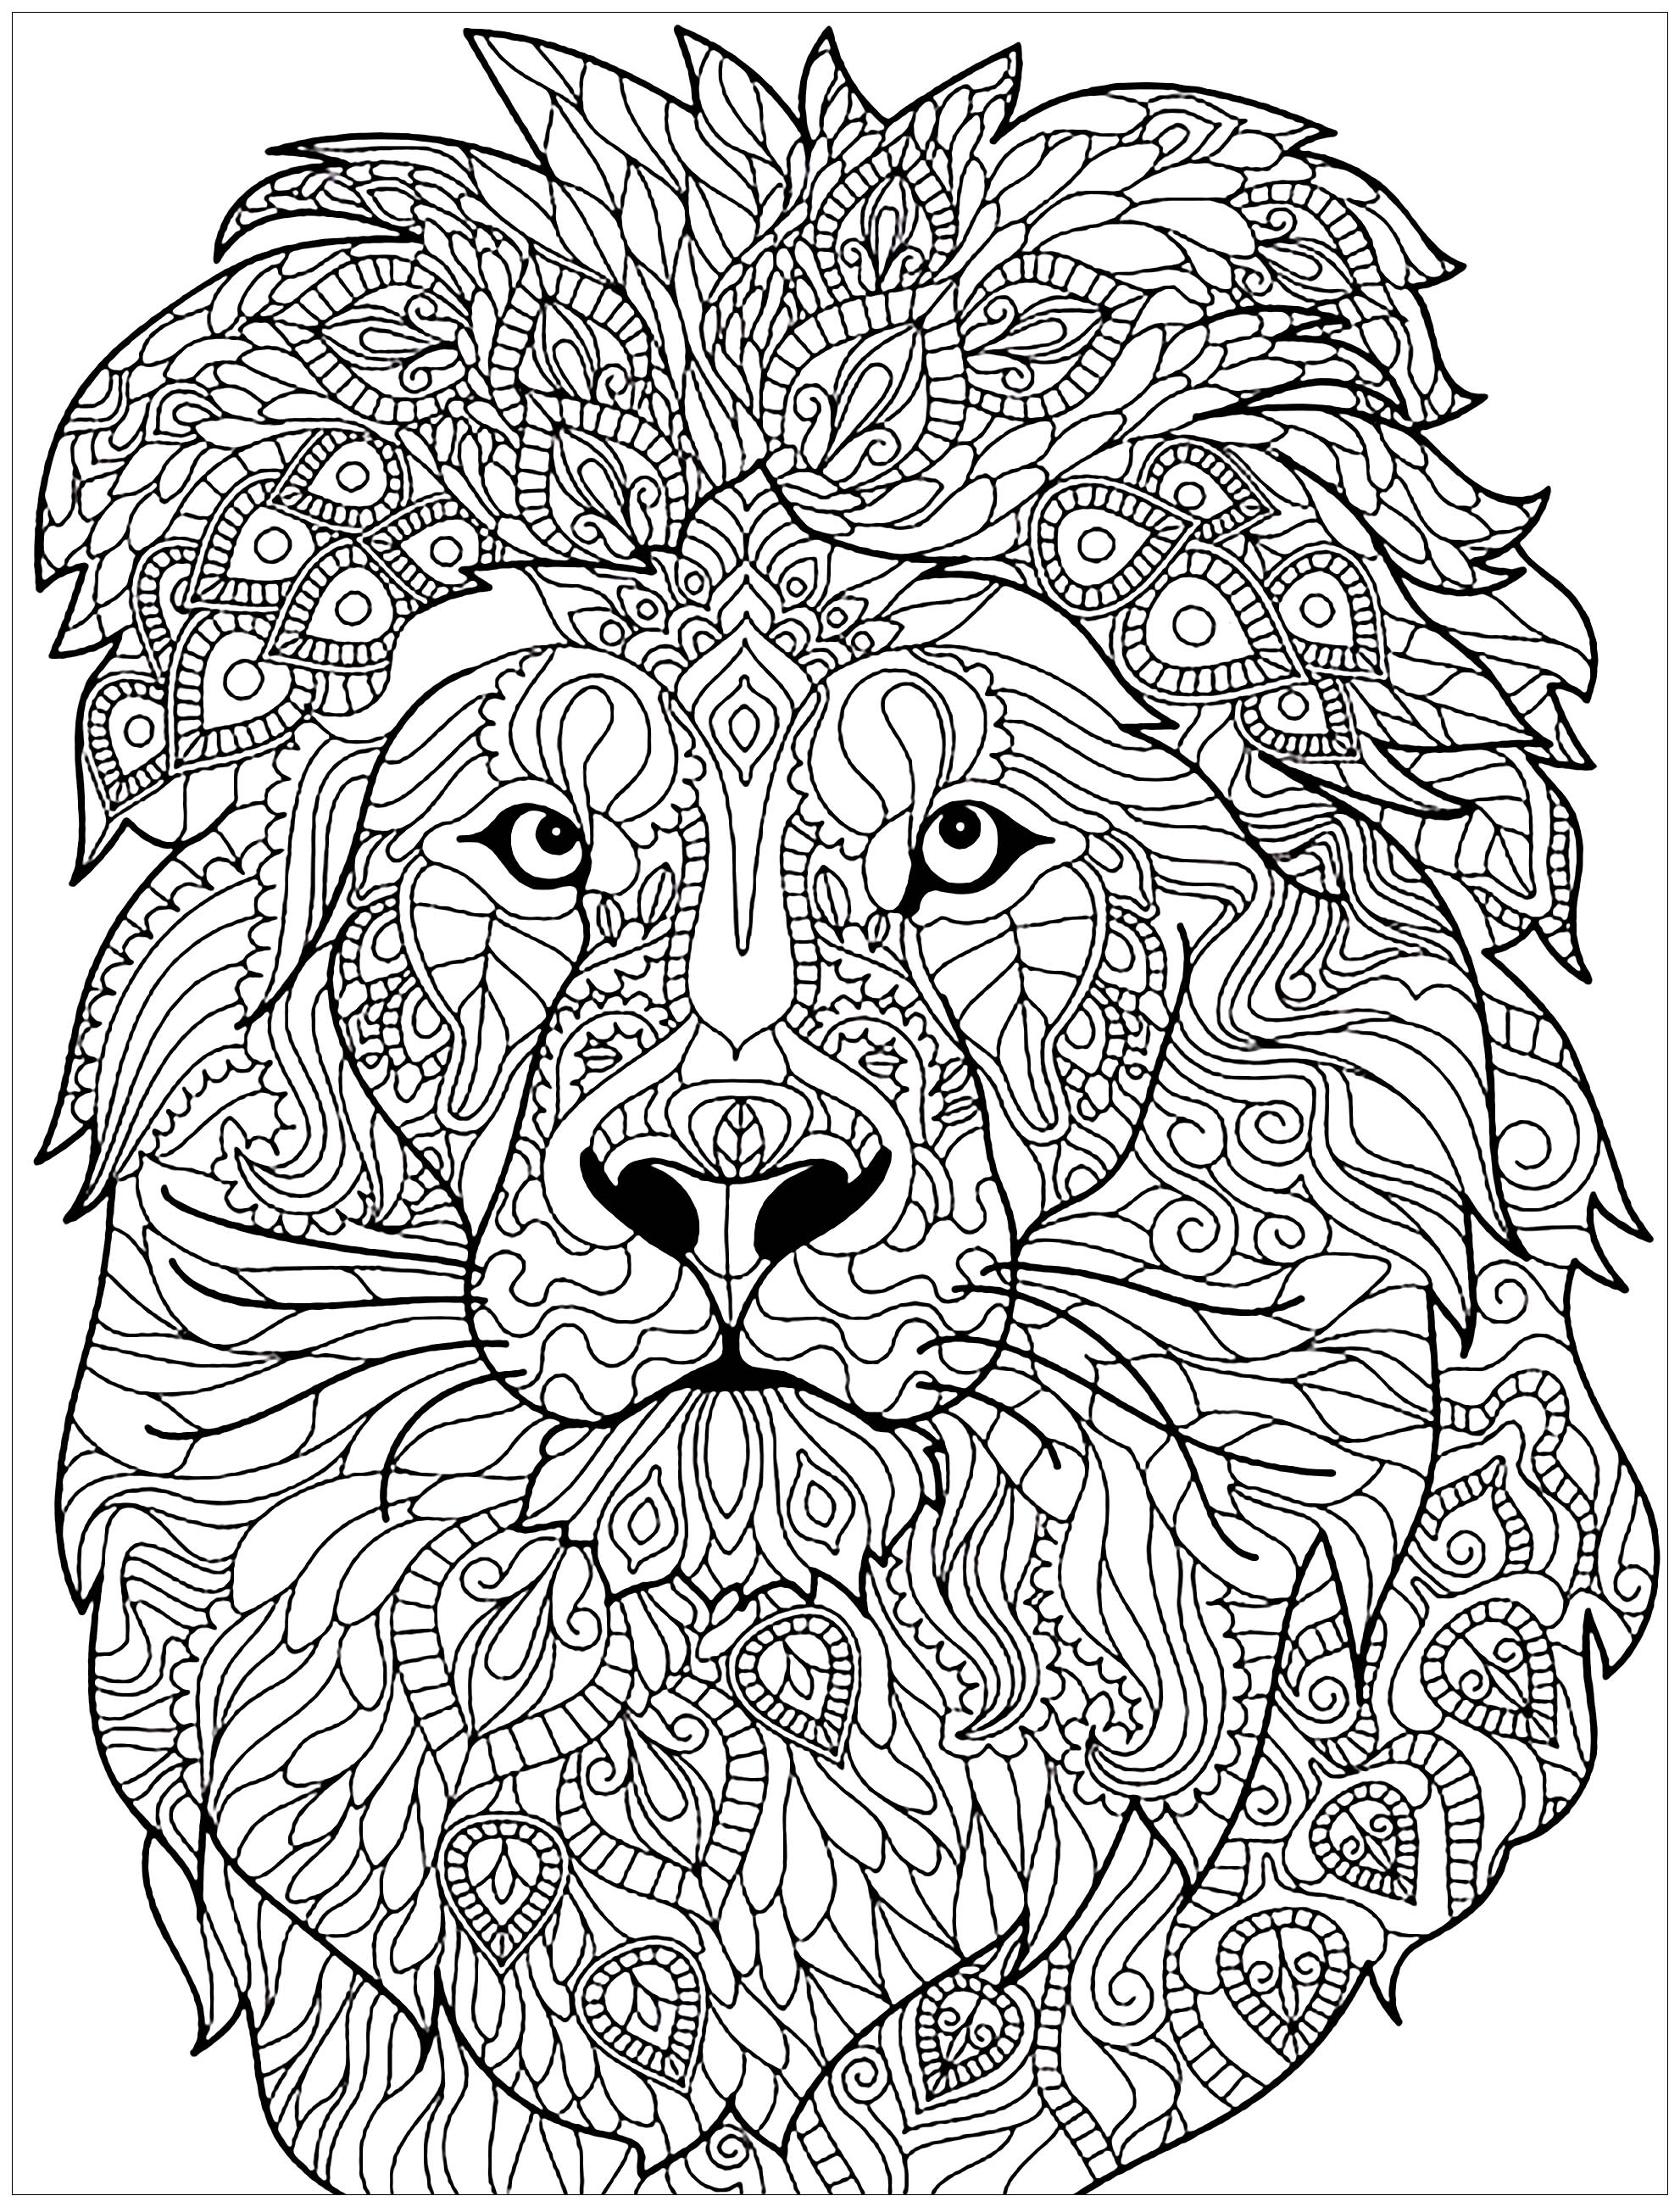 Leão incrível cheio de padrões intrincados